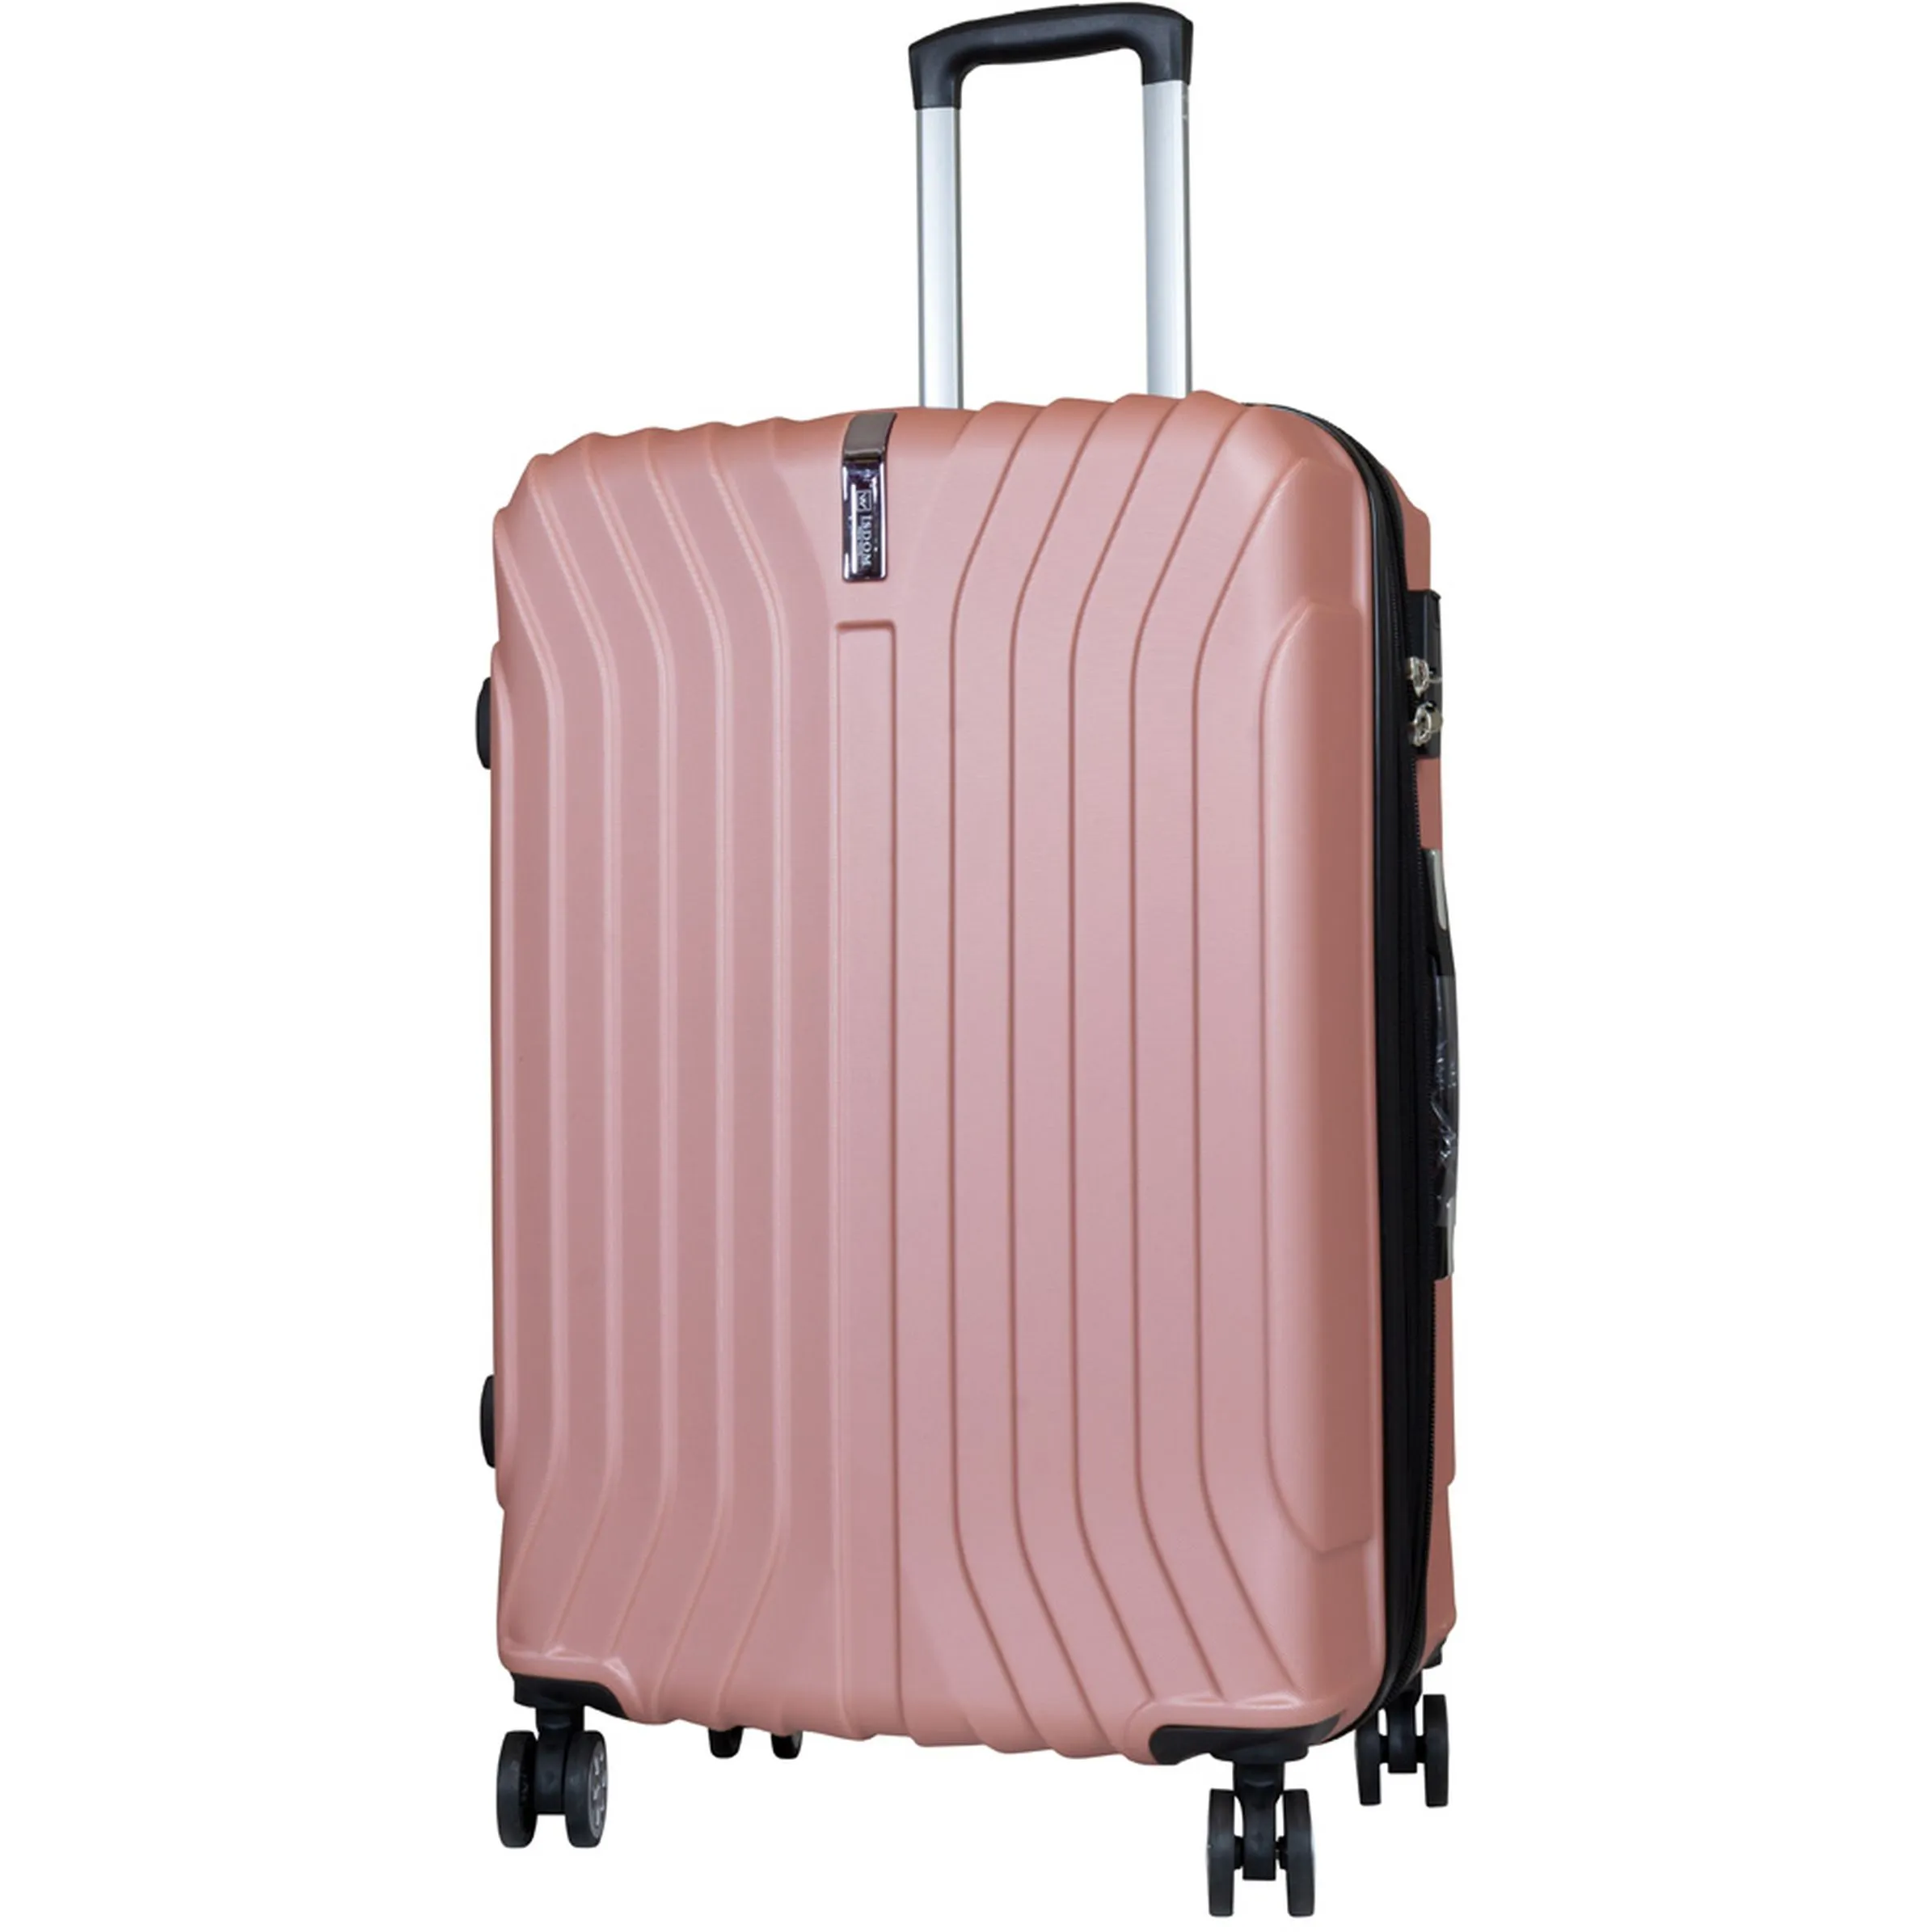 Koffer/Taschen Koffer Almeria 82 L  73x48x29 Rosa 894487 ROSA 1